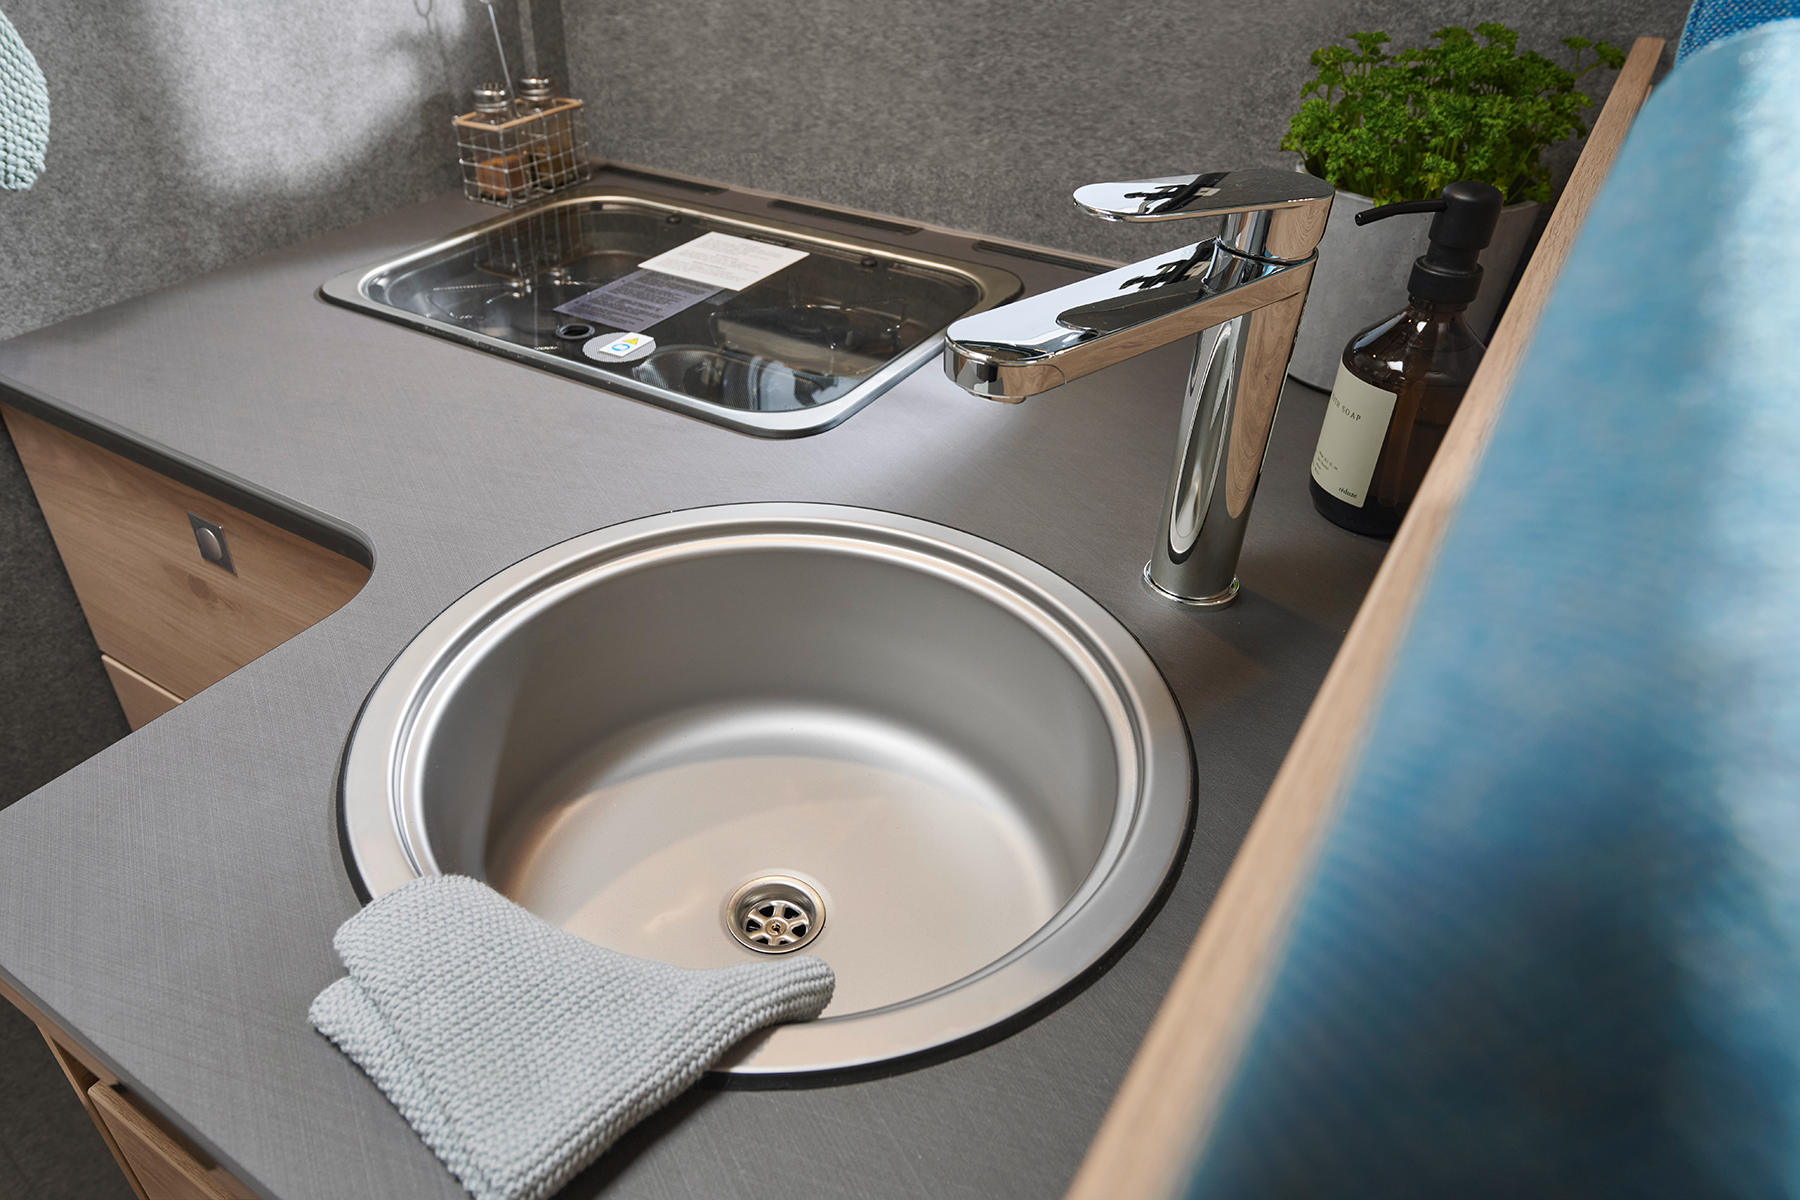 Le robinet surélevé permet de parfaitement faire la vaisselle dans l’évier même avec des casseroles et poêles de grande taille.